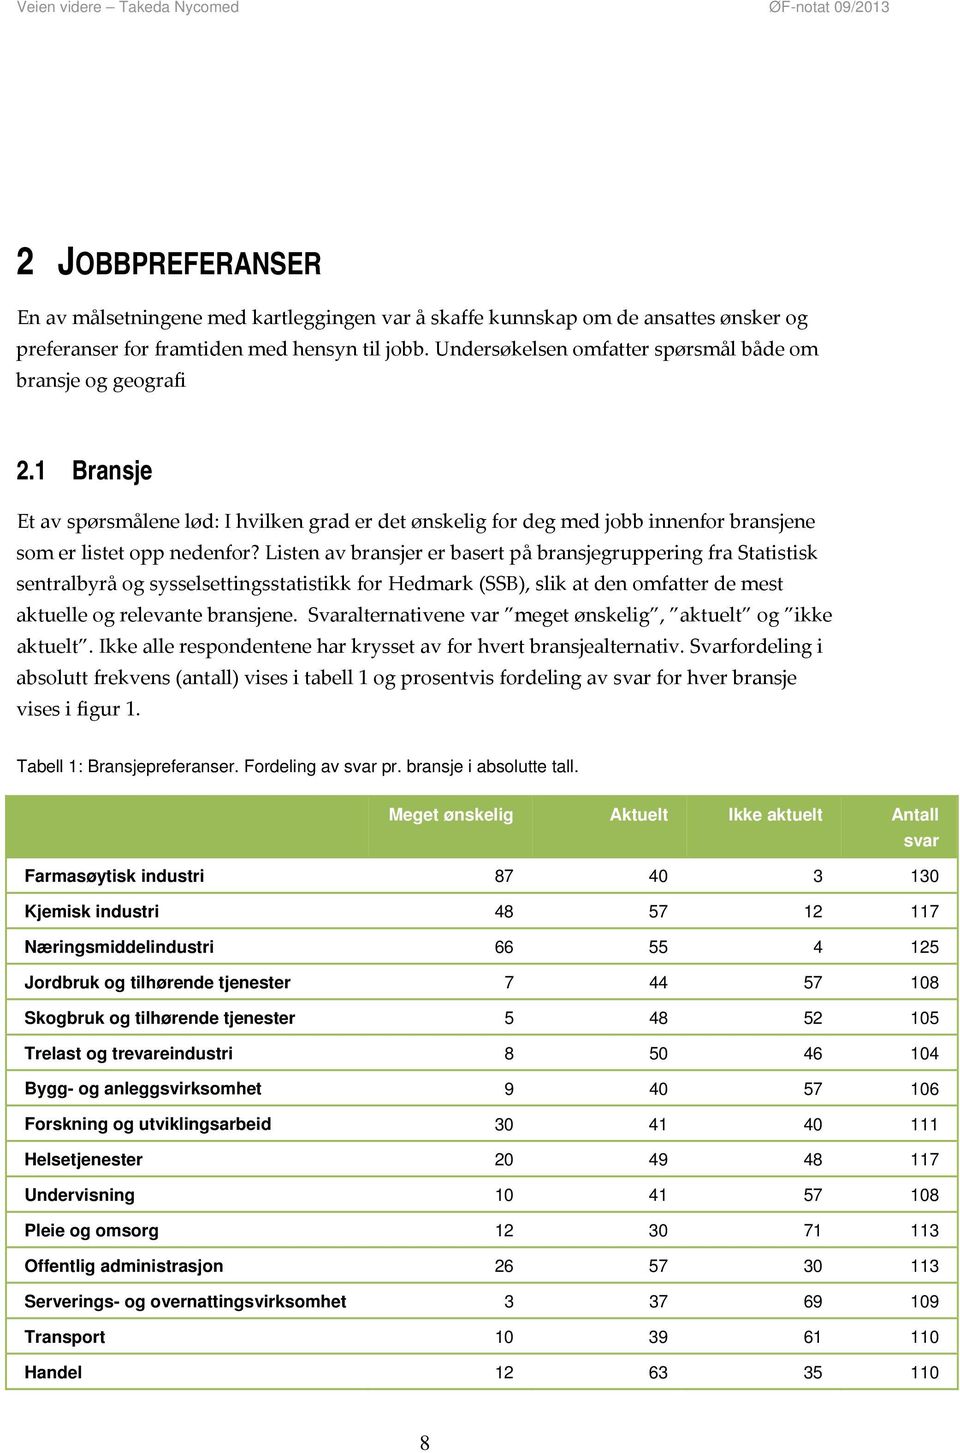 Listen av bransjer er basert på bransjegruppering fra Statistisk sentralbyrå og sysselsettingsstatistikk for Hedmark (SSB), slik at den omfatter de mest aktuelle og relevante bransjene.